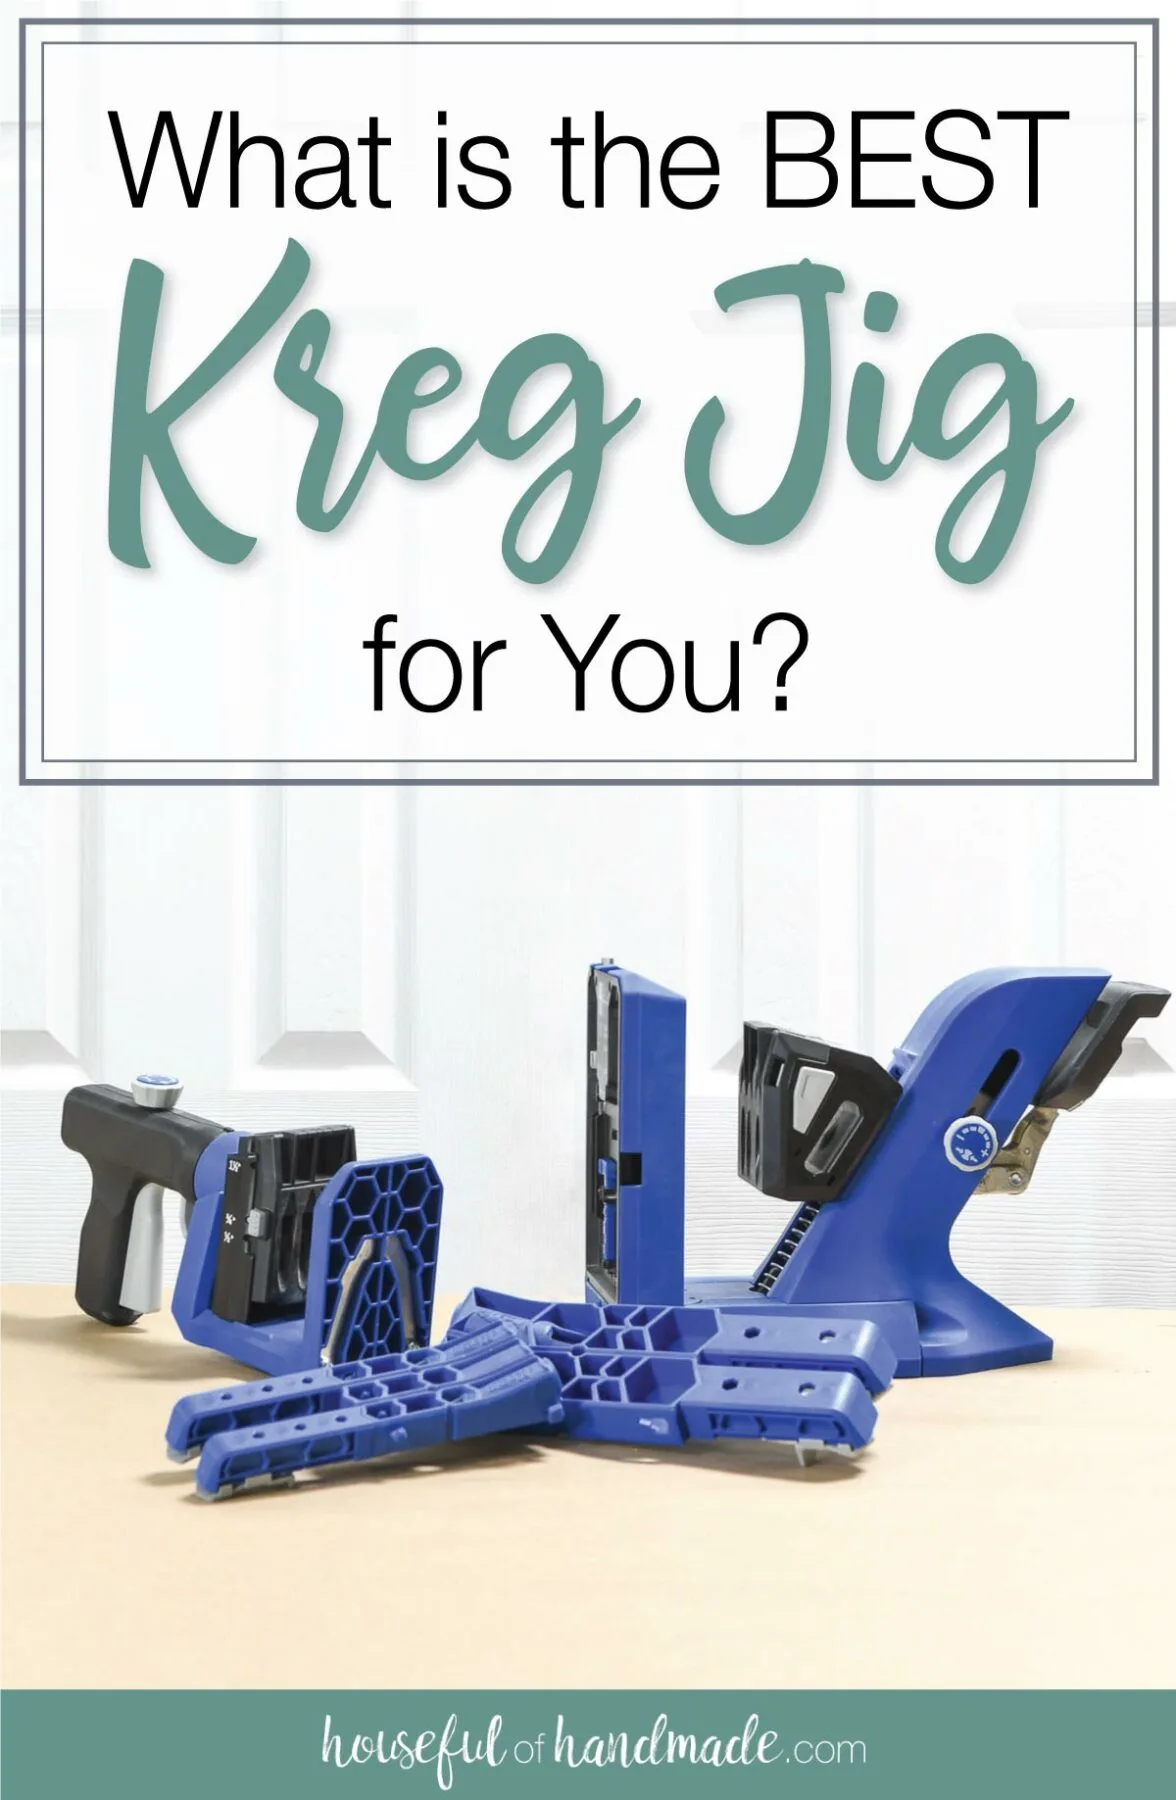 Best Kreg jig for beginners